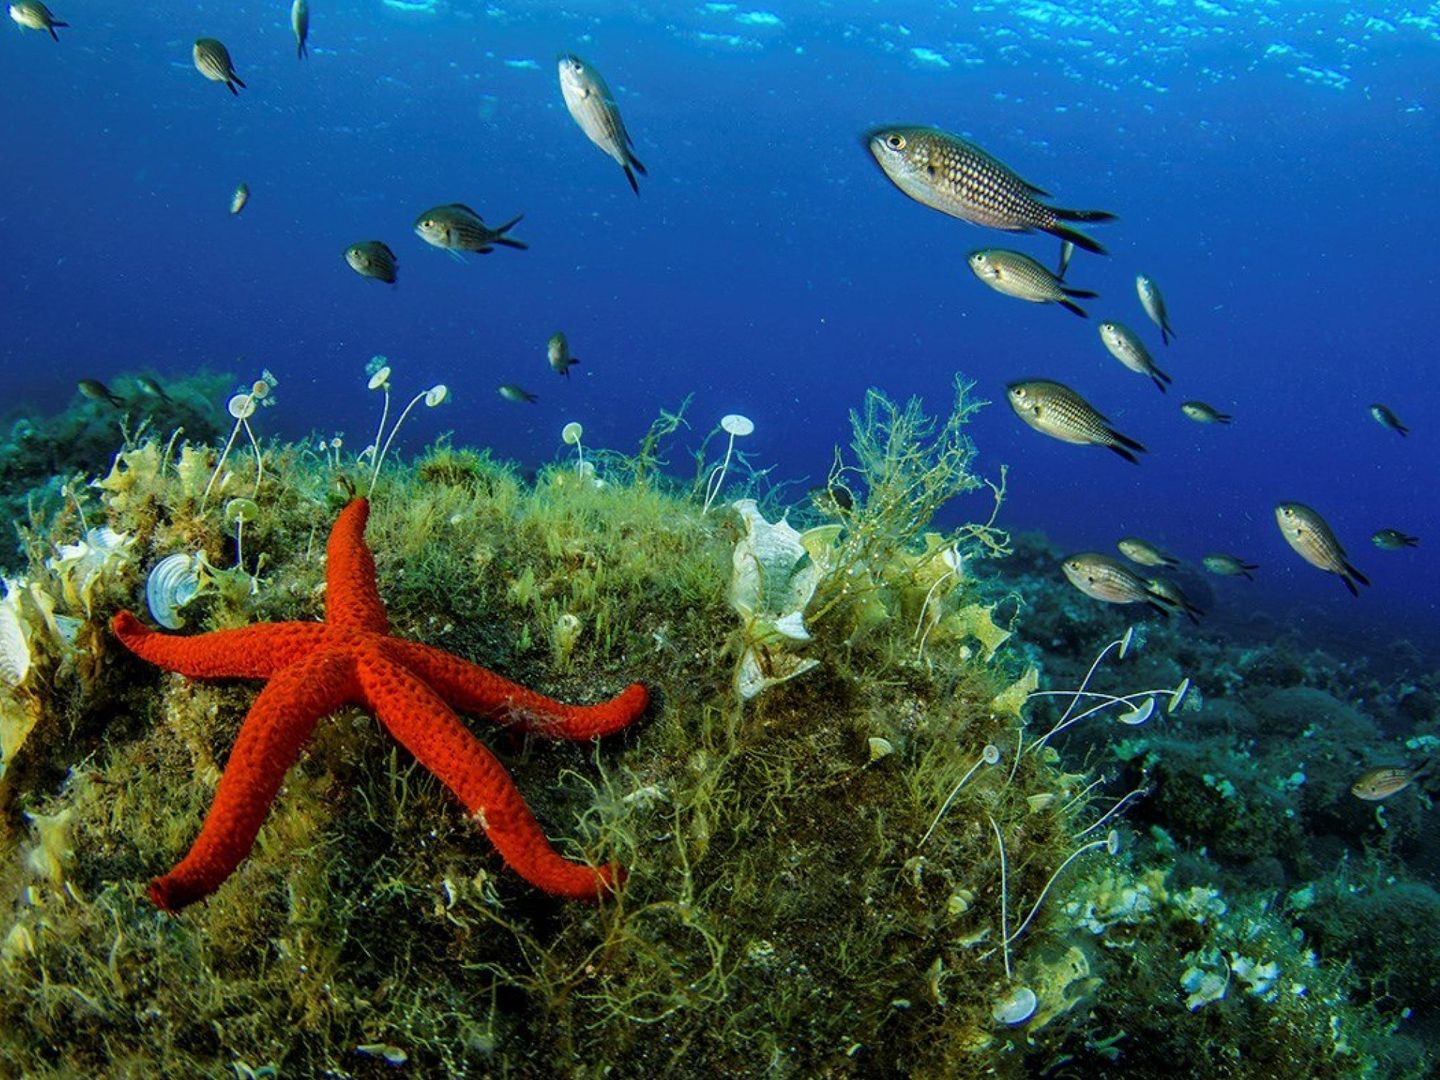 Oceana alerta de las graves consecuencias de la sobrepsca para la biodiversidad marina (Ocena)